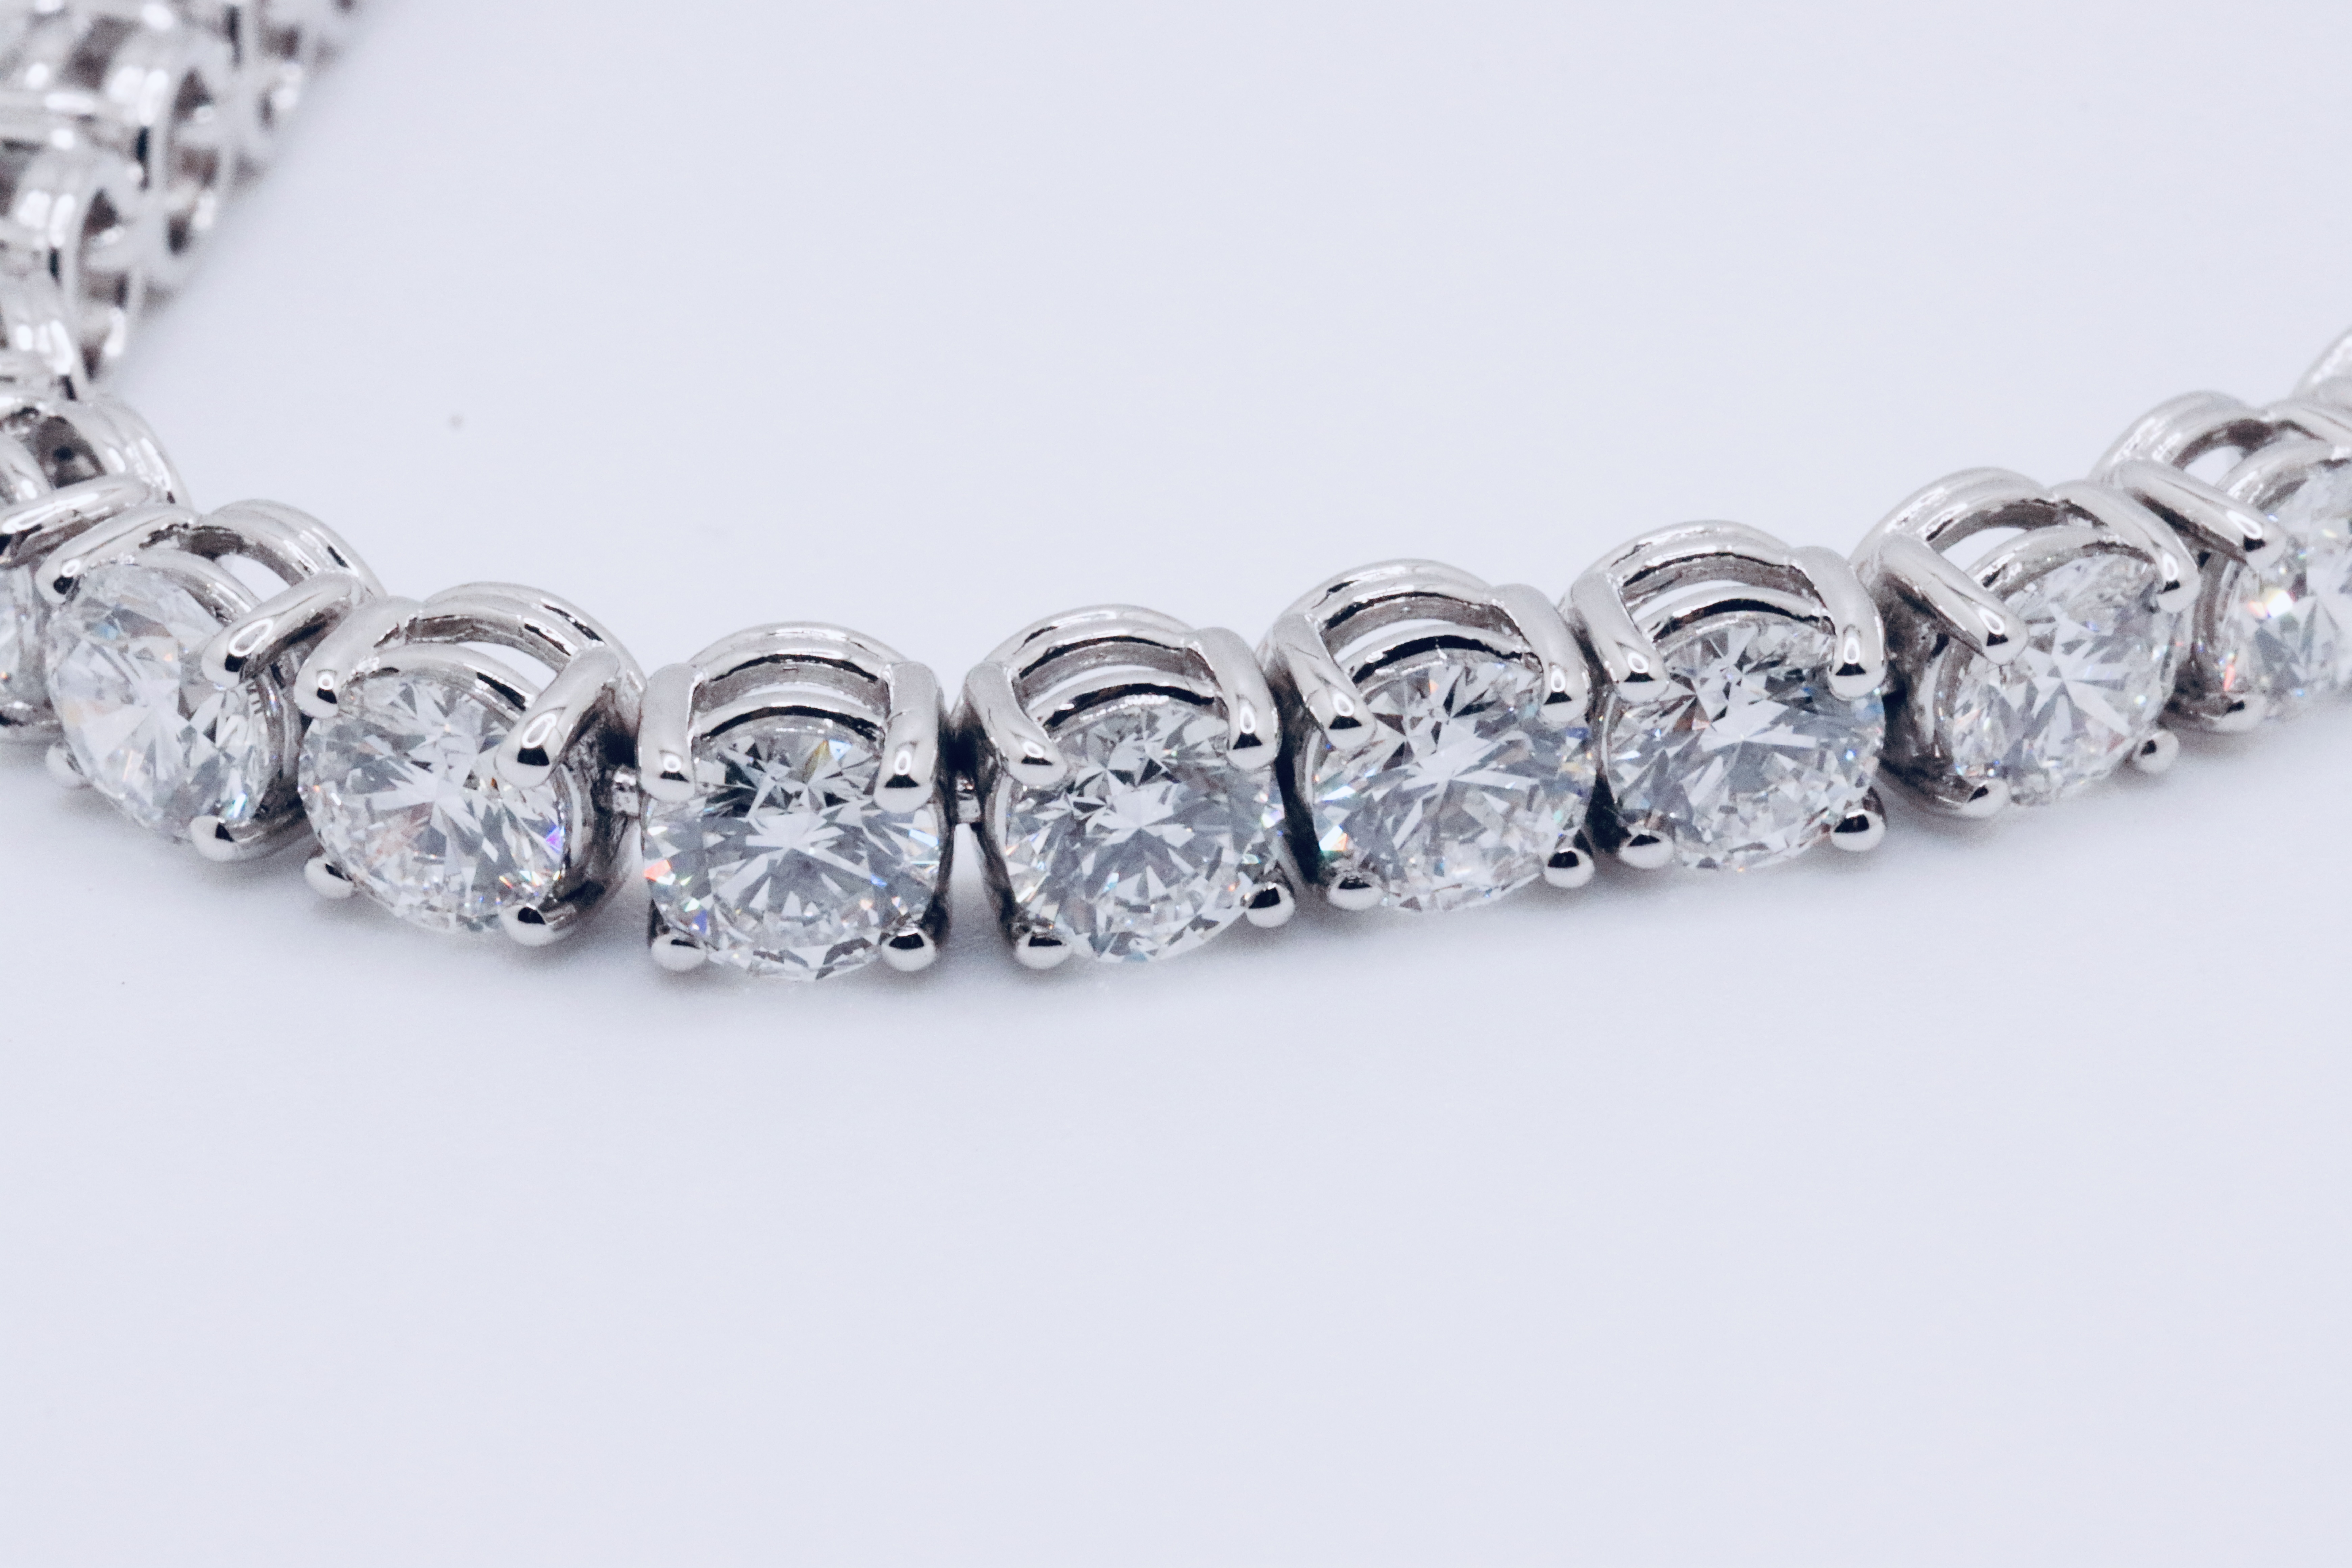 Round Brilliant Cut 14 Carat Diamond Tennis Bracelet D Colour VVS Clarity - 18Kt White Gold - IGI - Image 6 of 37